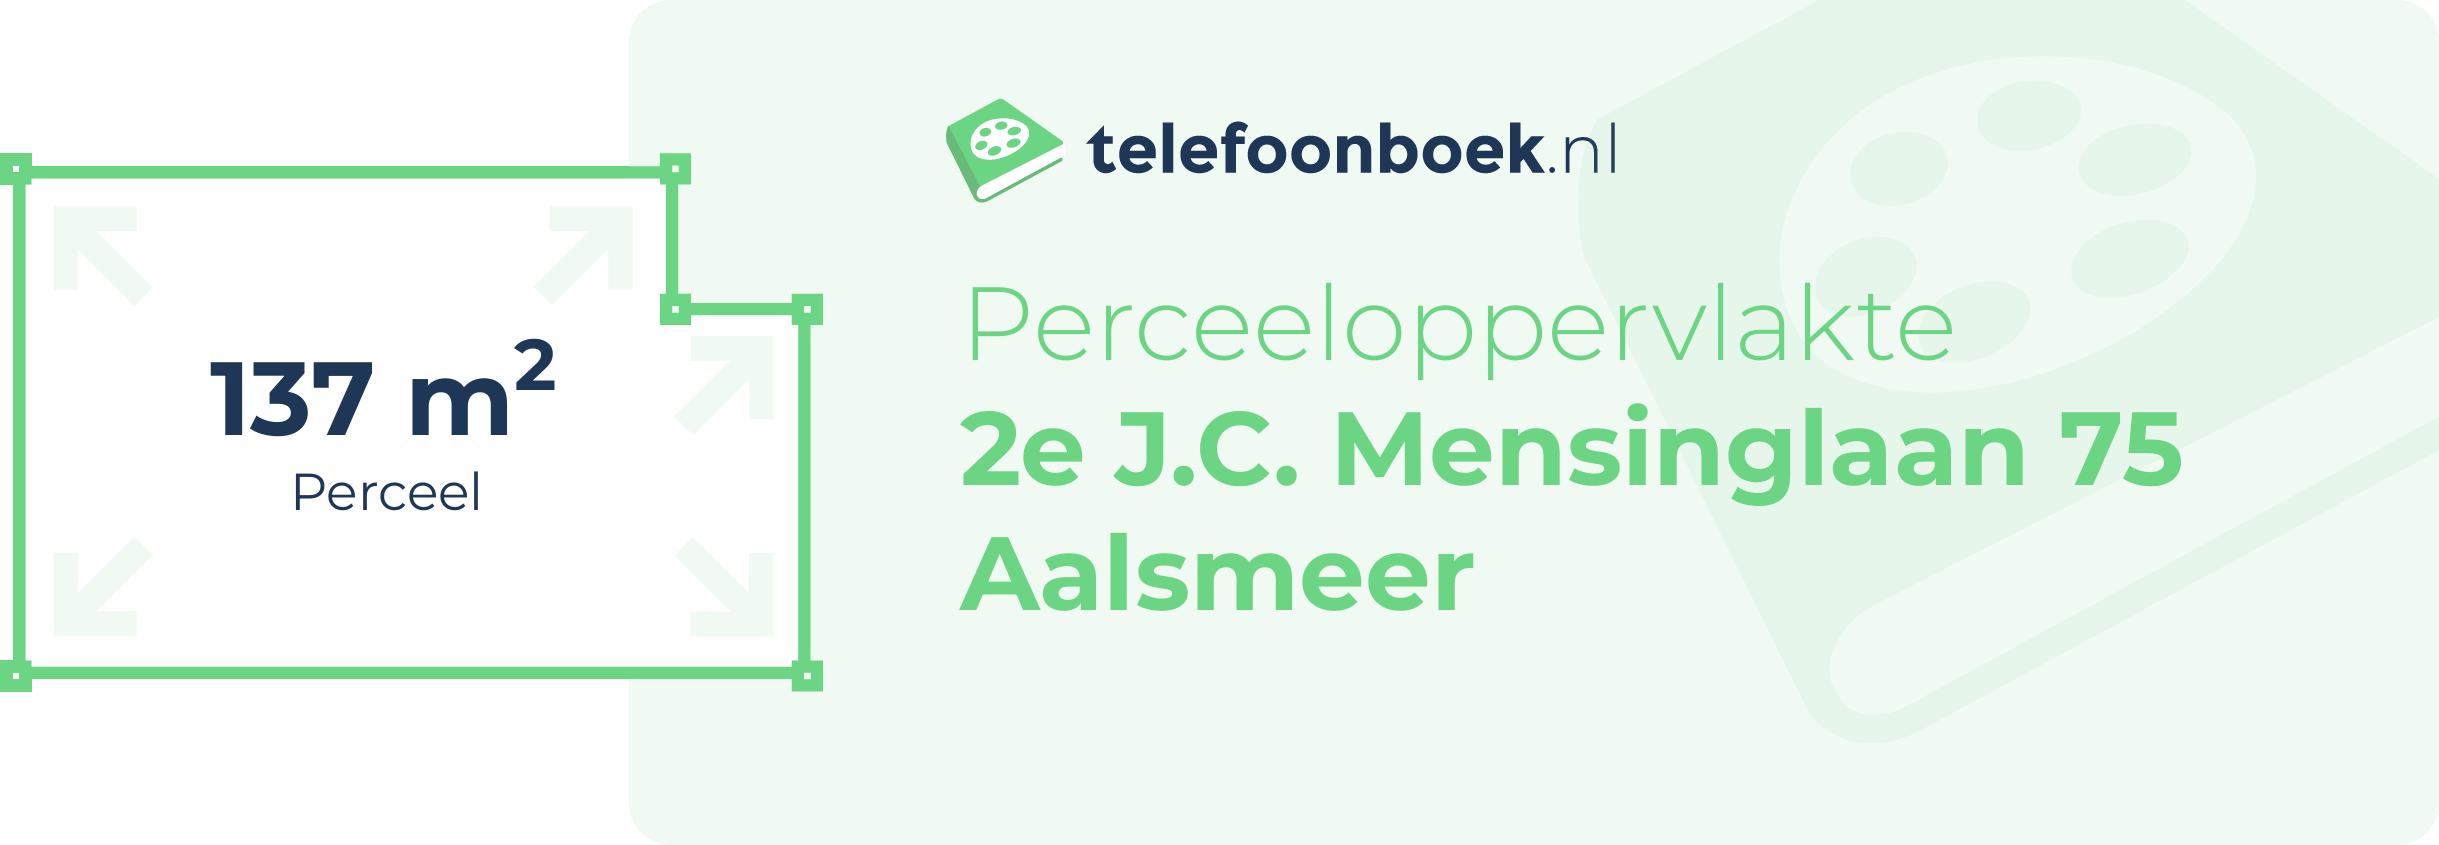 Perceeloppervlakte 2e J.C. Mensinglaan 75 Aalsmeer